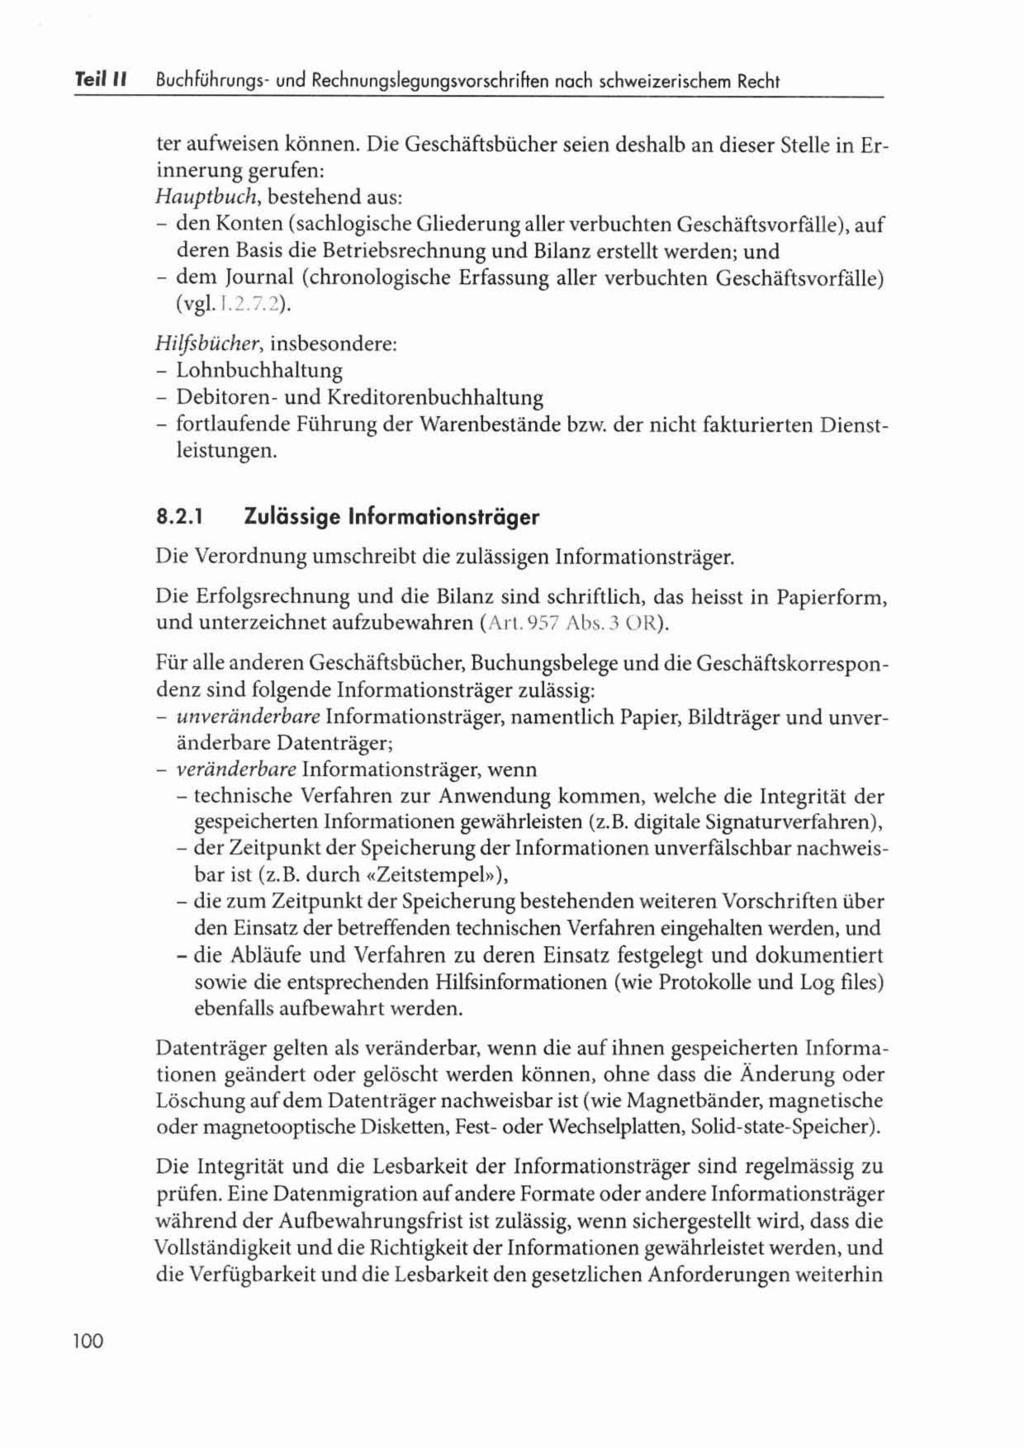 Teil I I Buch Führungs- und Rechn~ngsle~un~svorschriften nach schweizerischem Recht ter aufweisen können.